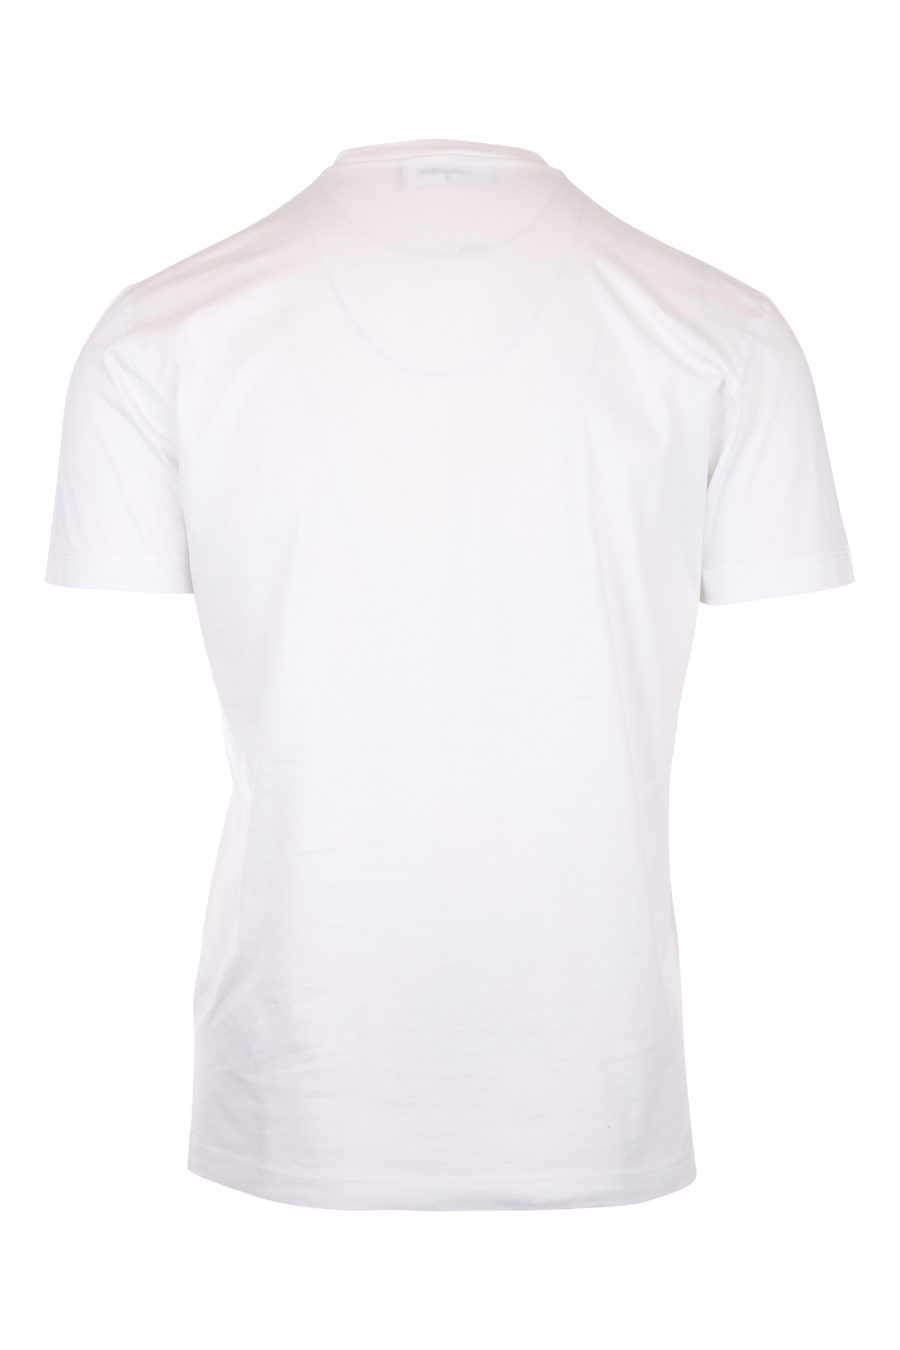 Camiseta blanca con estampado de perro "icon" - IMG 9782